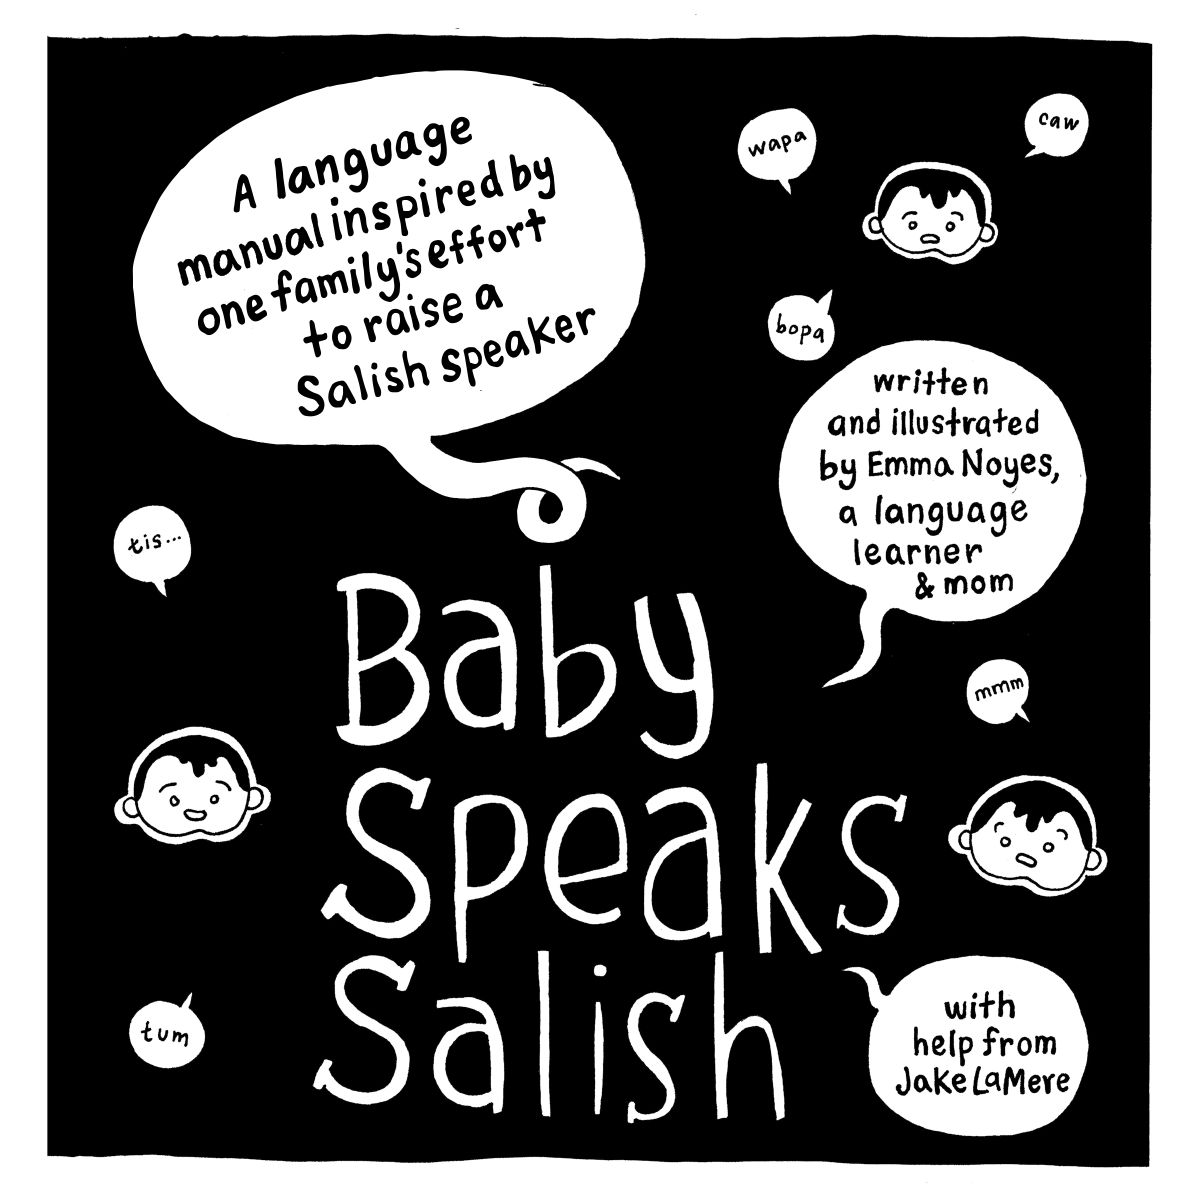 “Baby Speaks Salish” by Emma Noyes  (Courtesy)